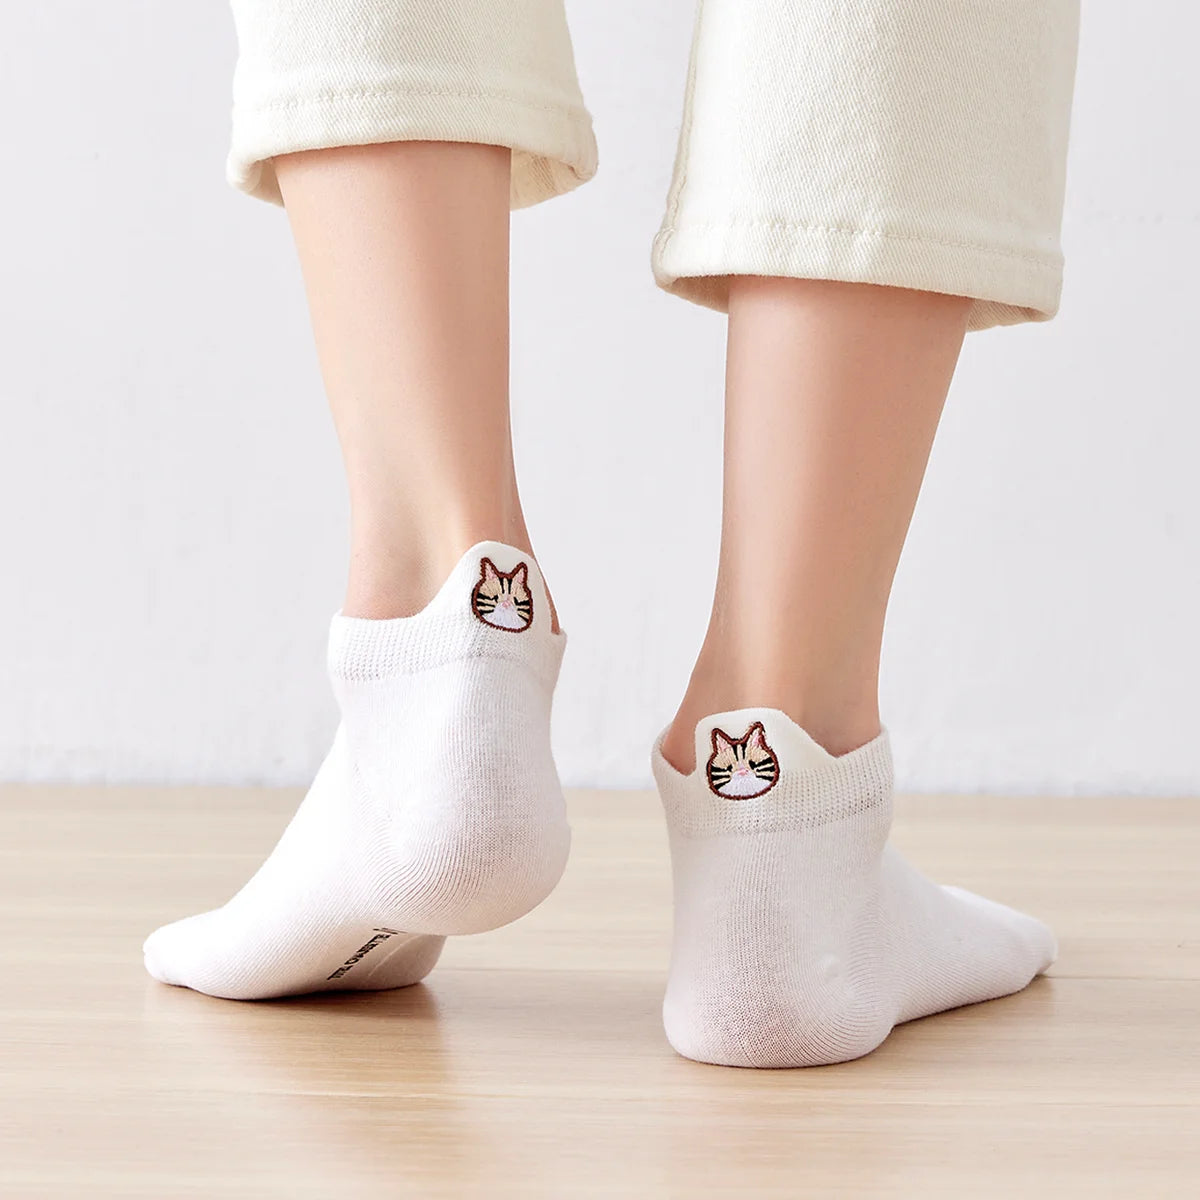 Chaussettes blanches en coton à languette chat pour femme | Chaussettes confortables et élégantes | Idéales pour le quotidien ou les occasions spéciales | Disponibles en plusieurs couleurs et tailles